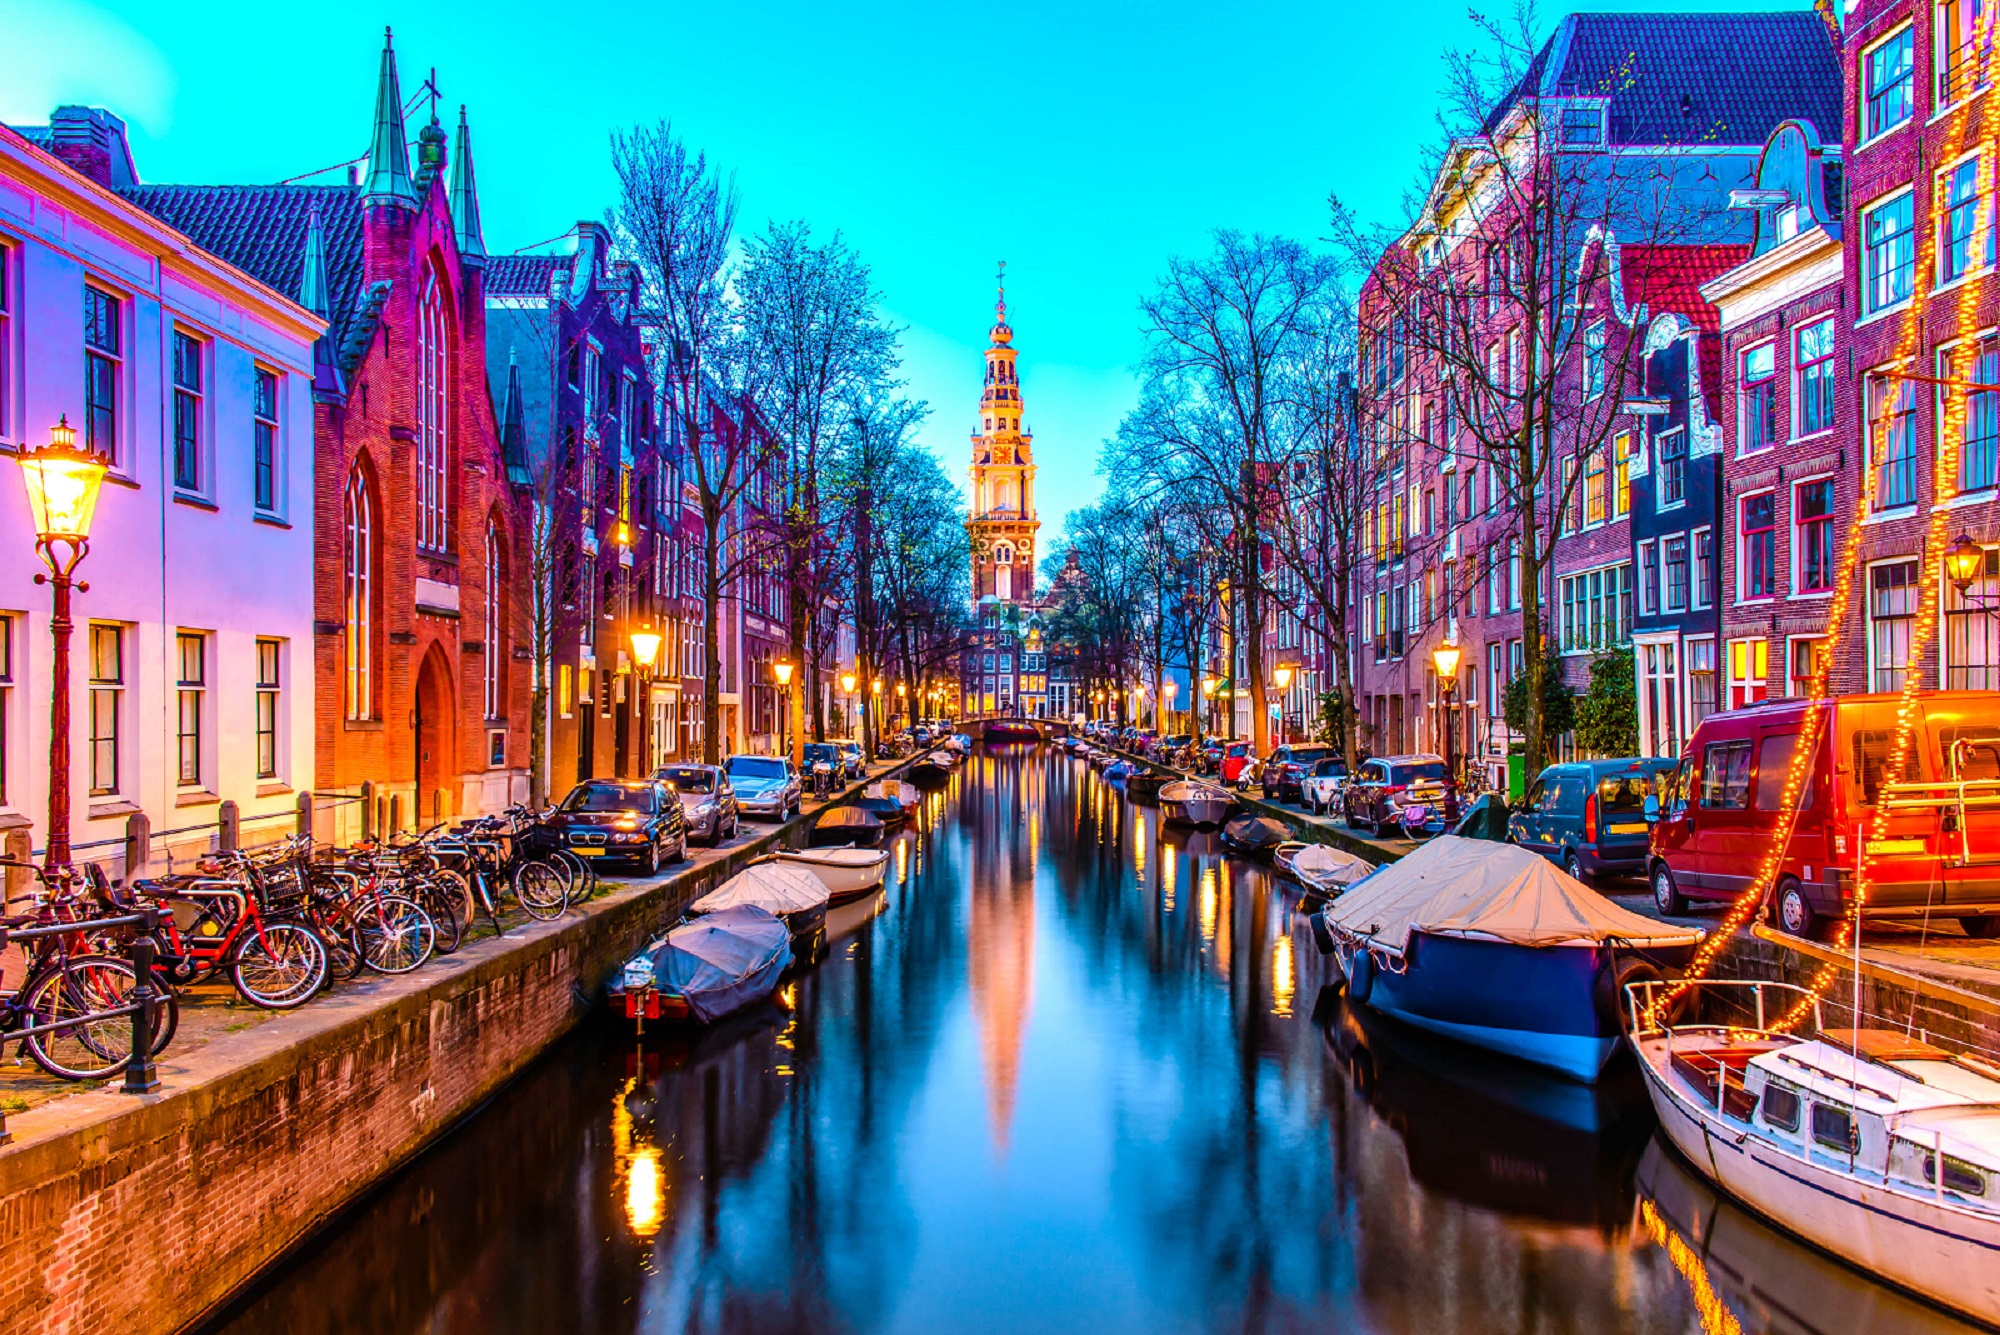 Ghé qua Thủ đô Amsterdam